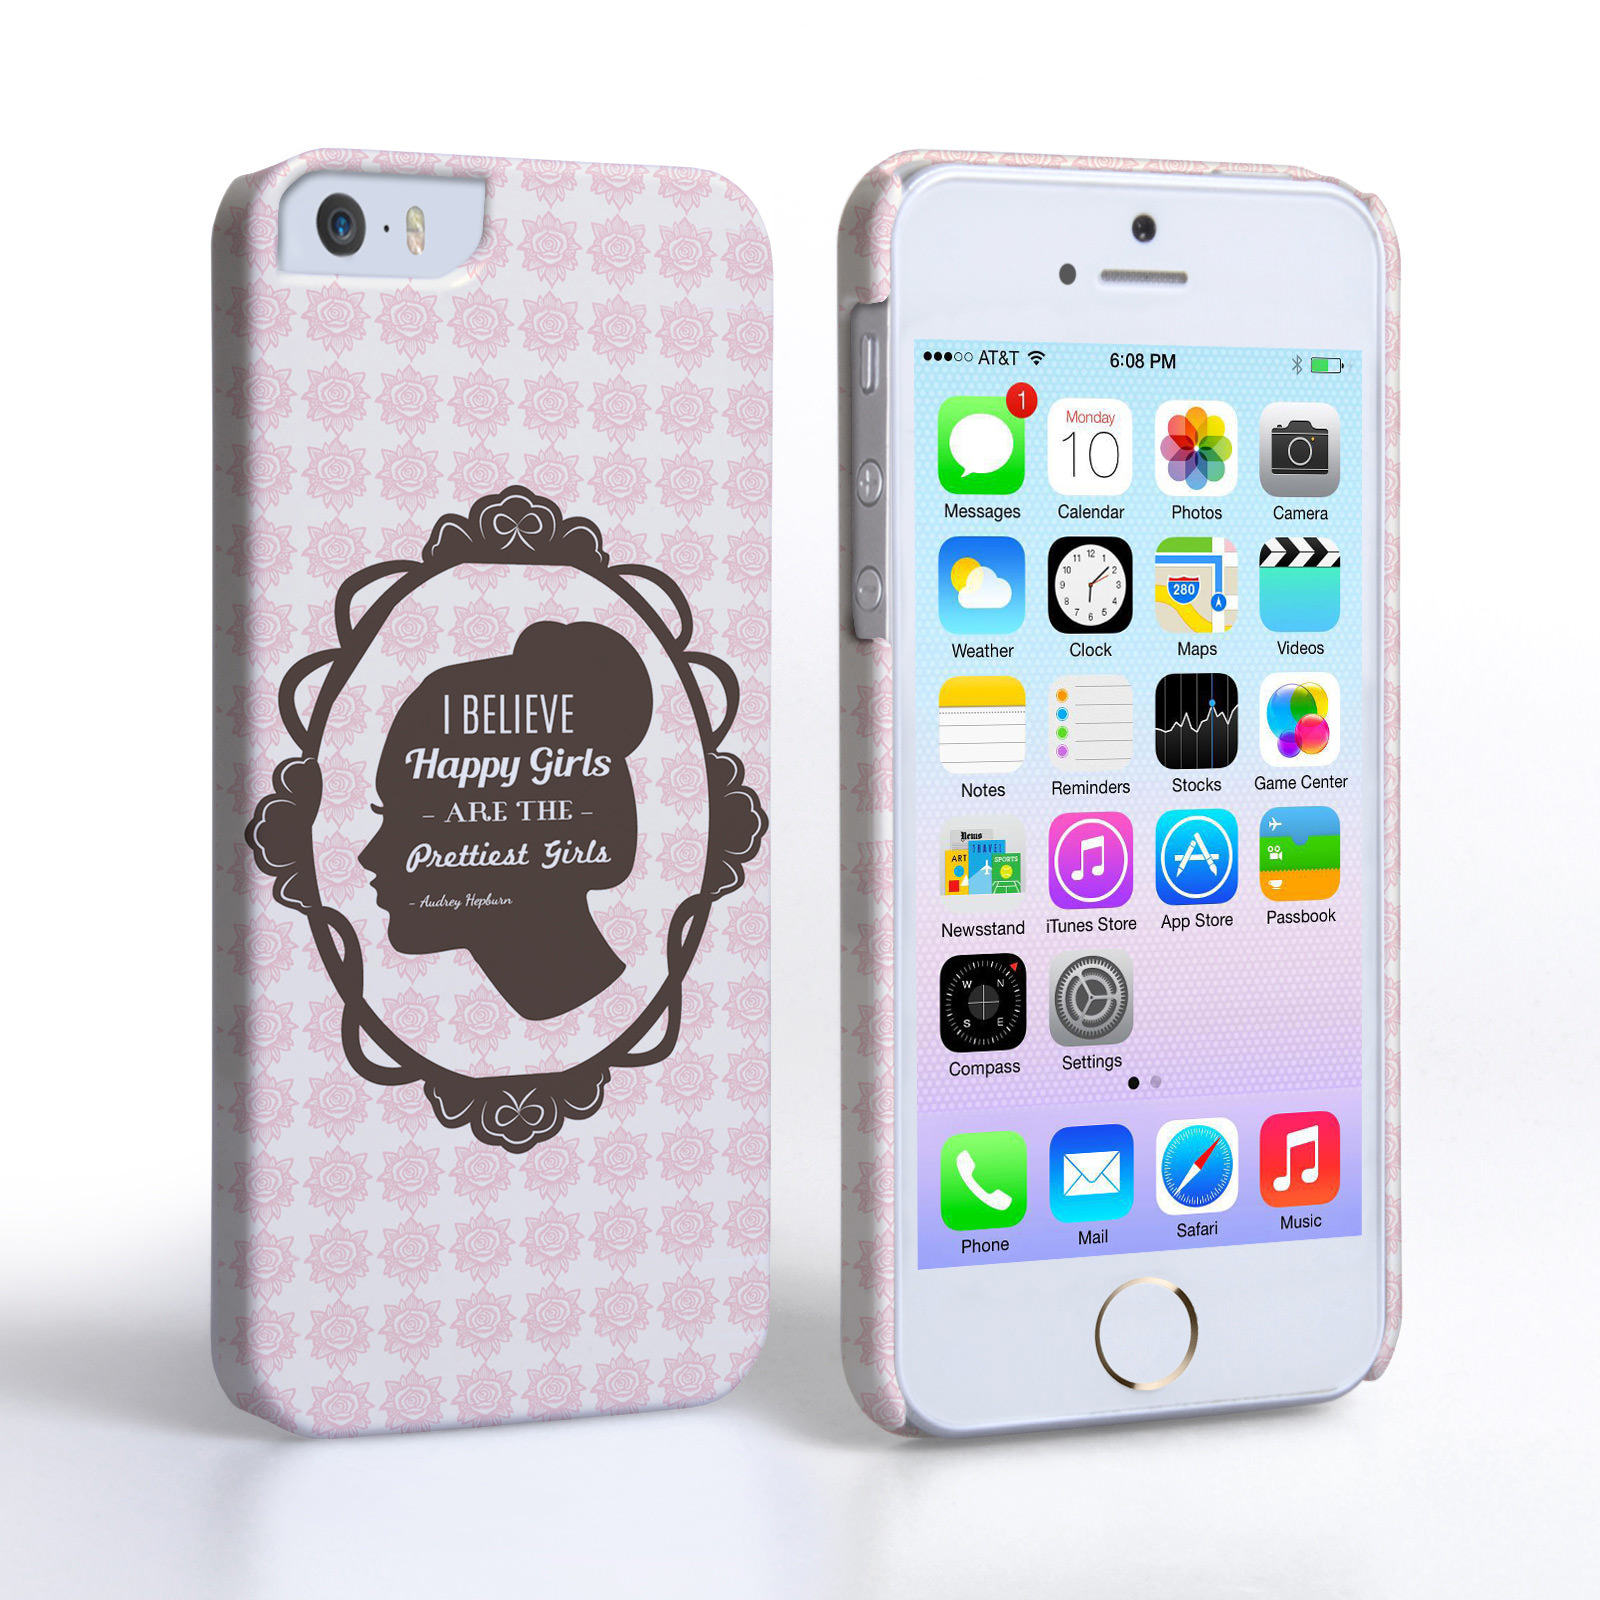 Caseflex iPhone 5/5s Audrey Hepburn ‘Happy Girls’ Quote Case